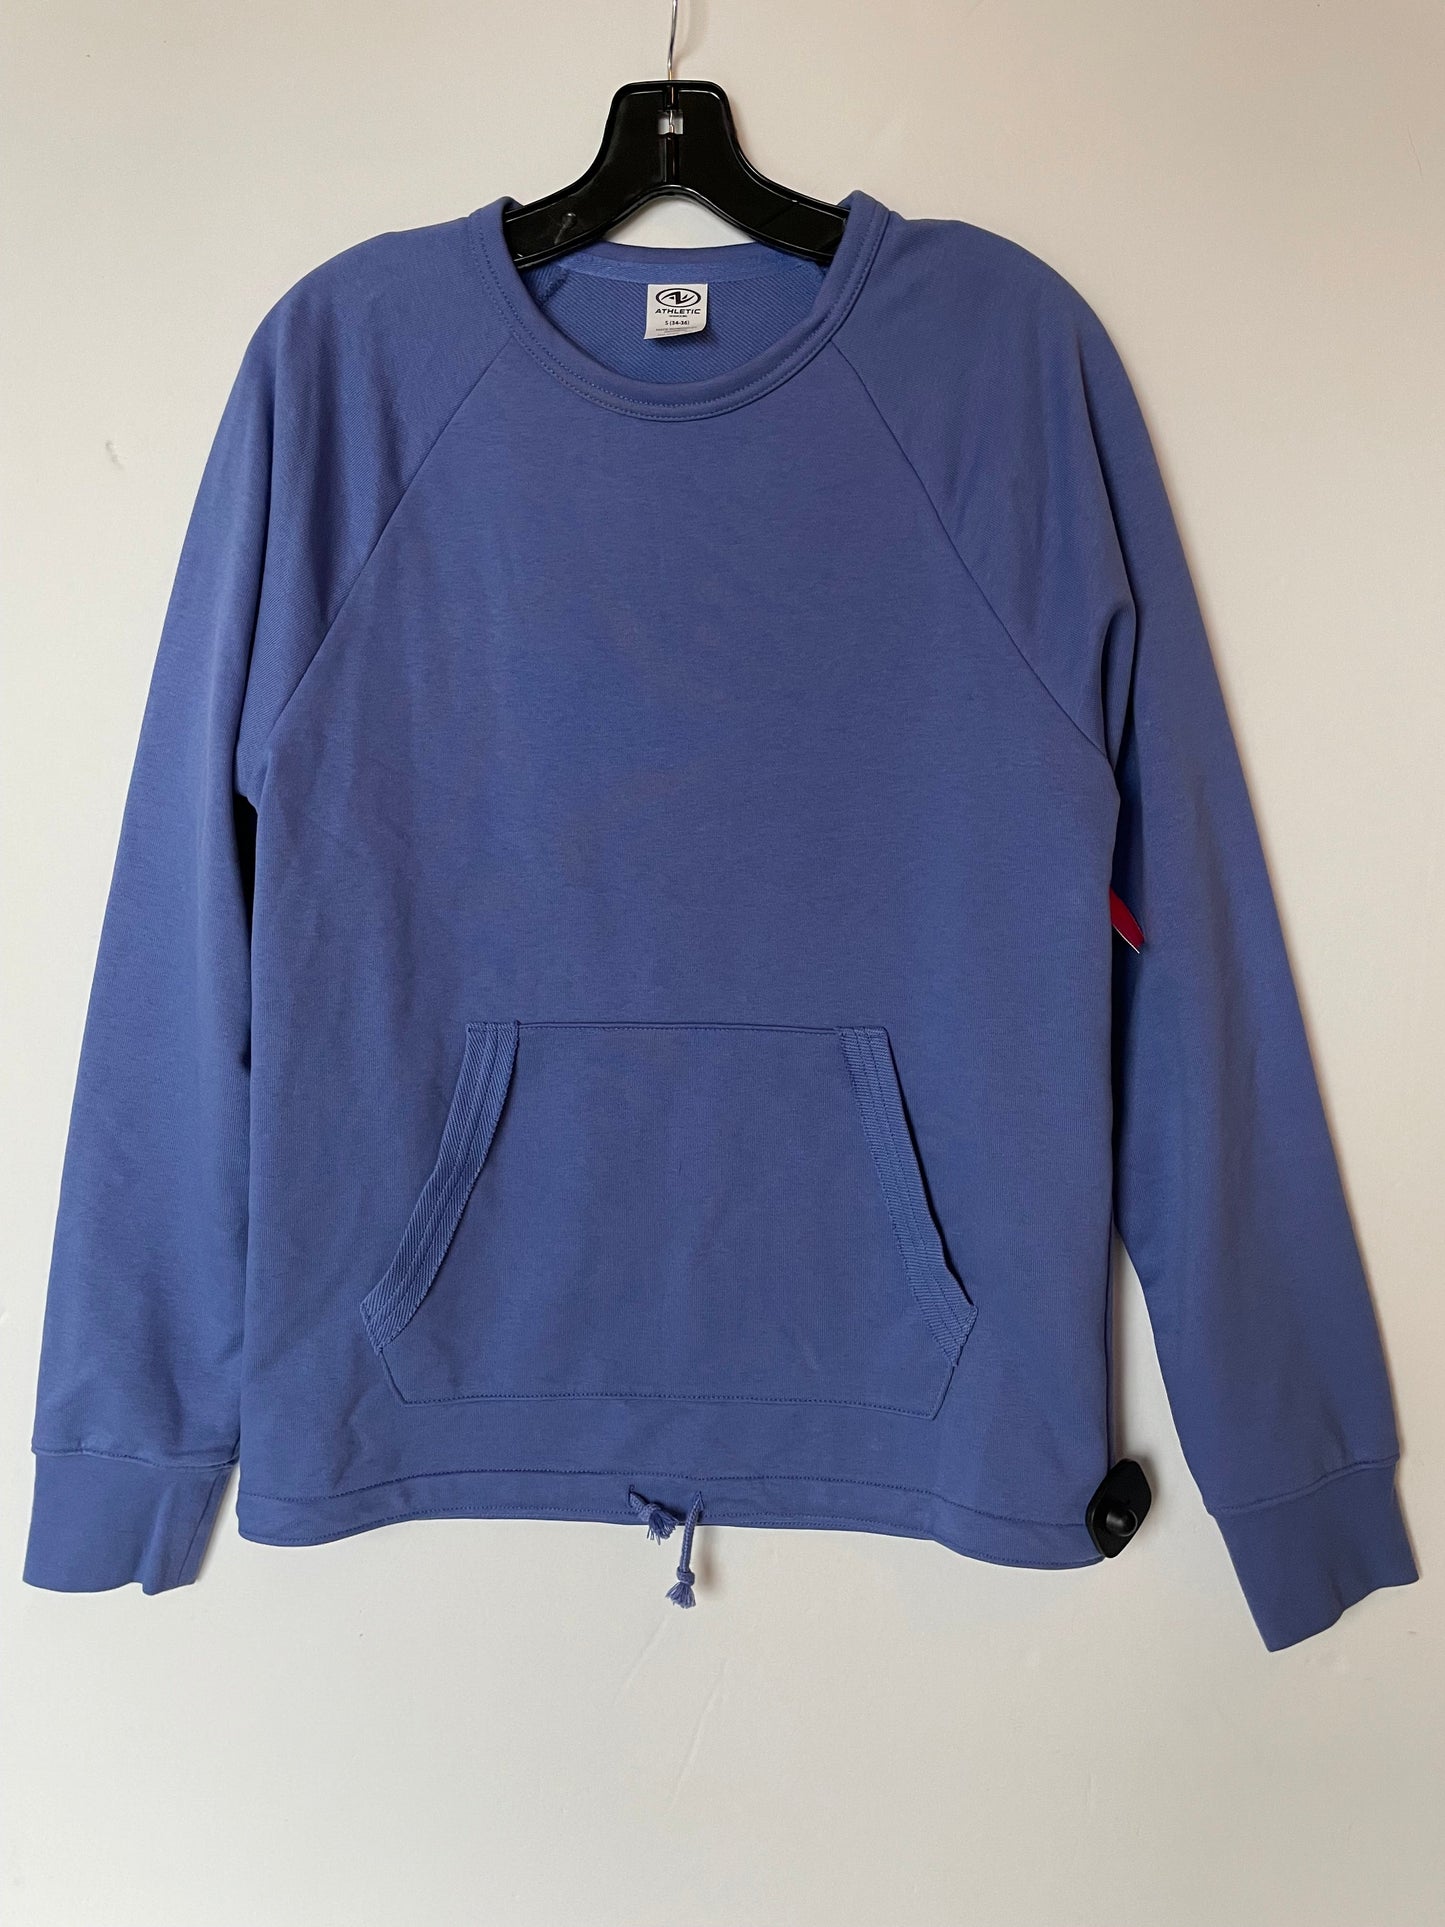 Sweatshirt Crewneck By Athletica  Size: S